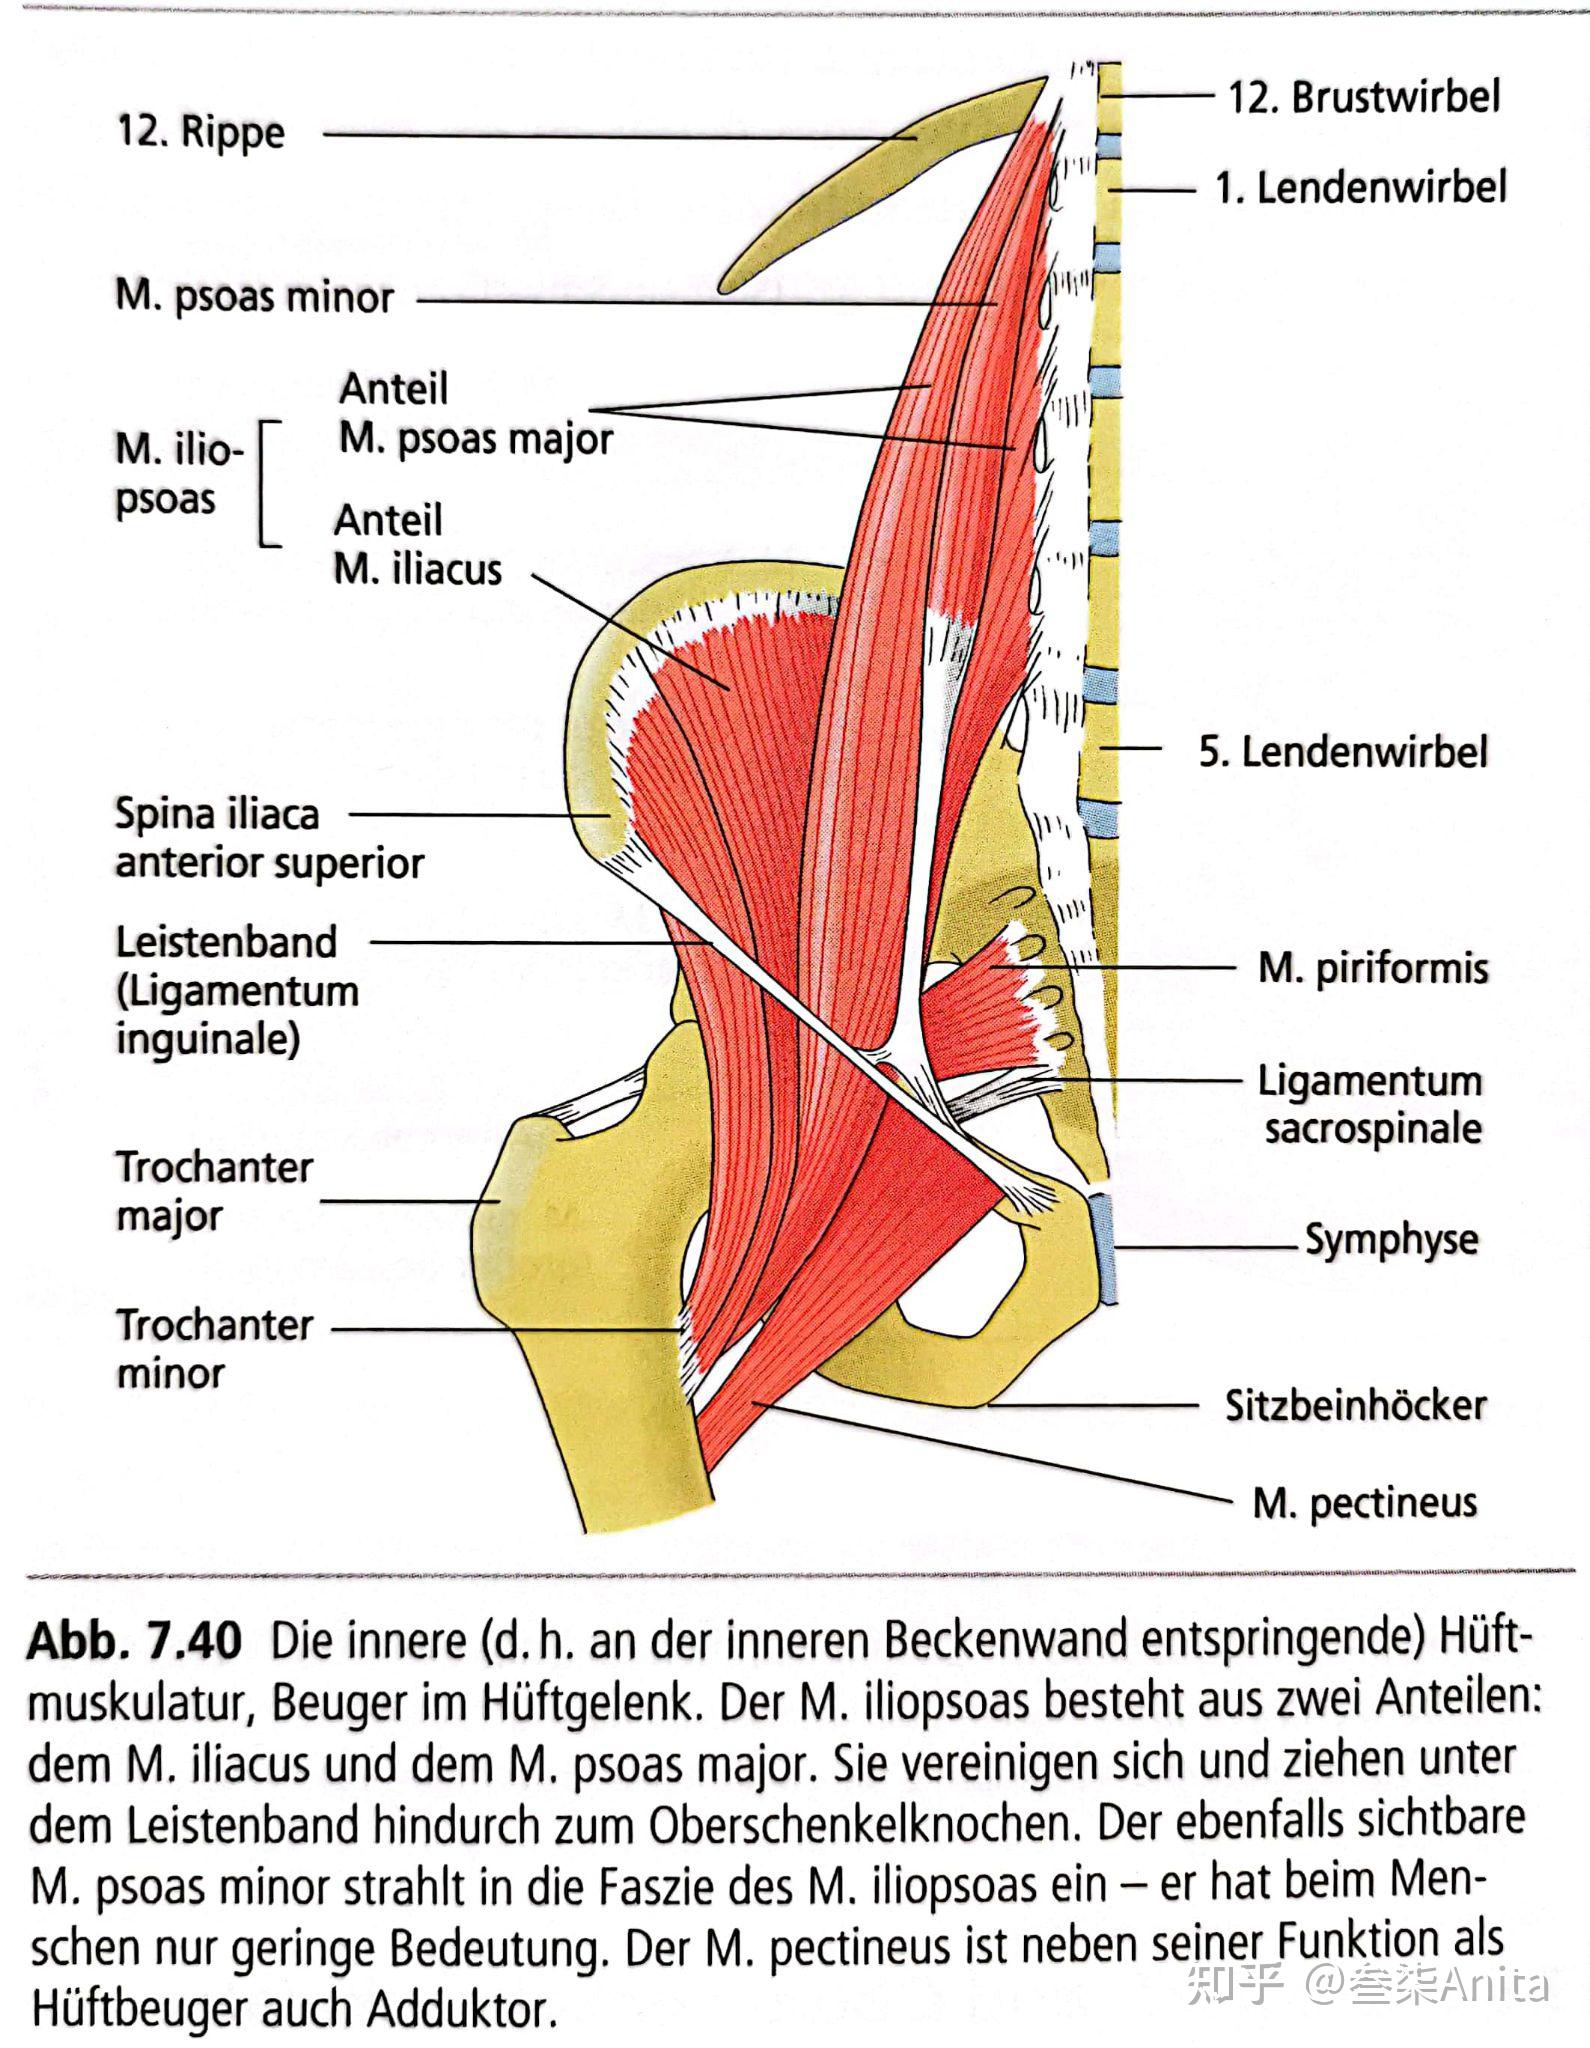 髋关节内旋的肌肉图片